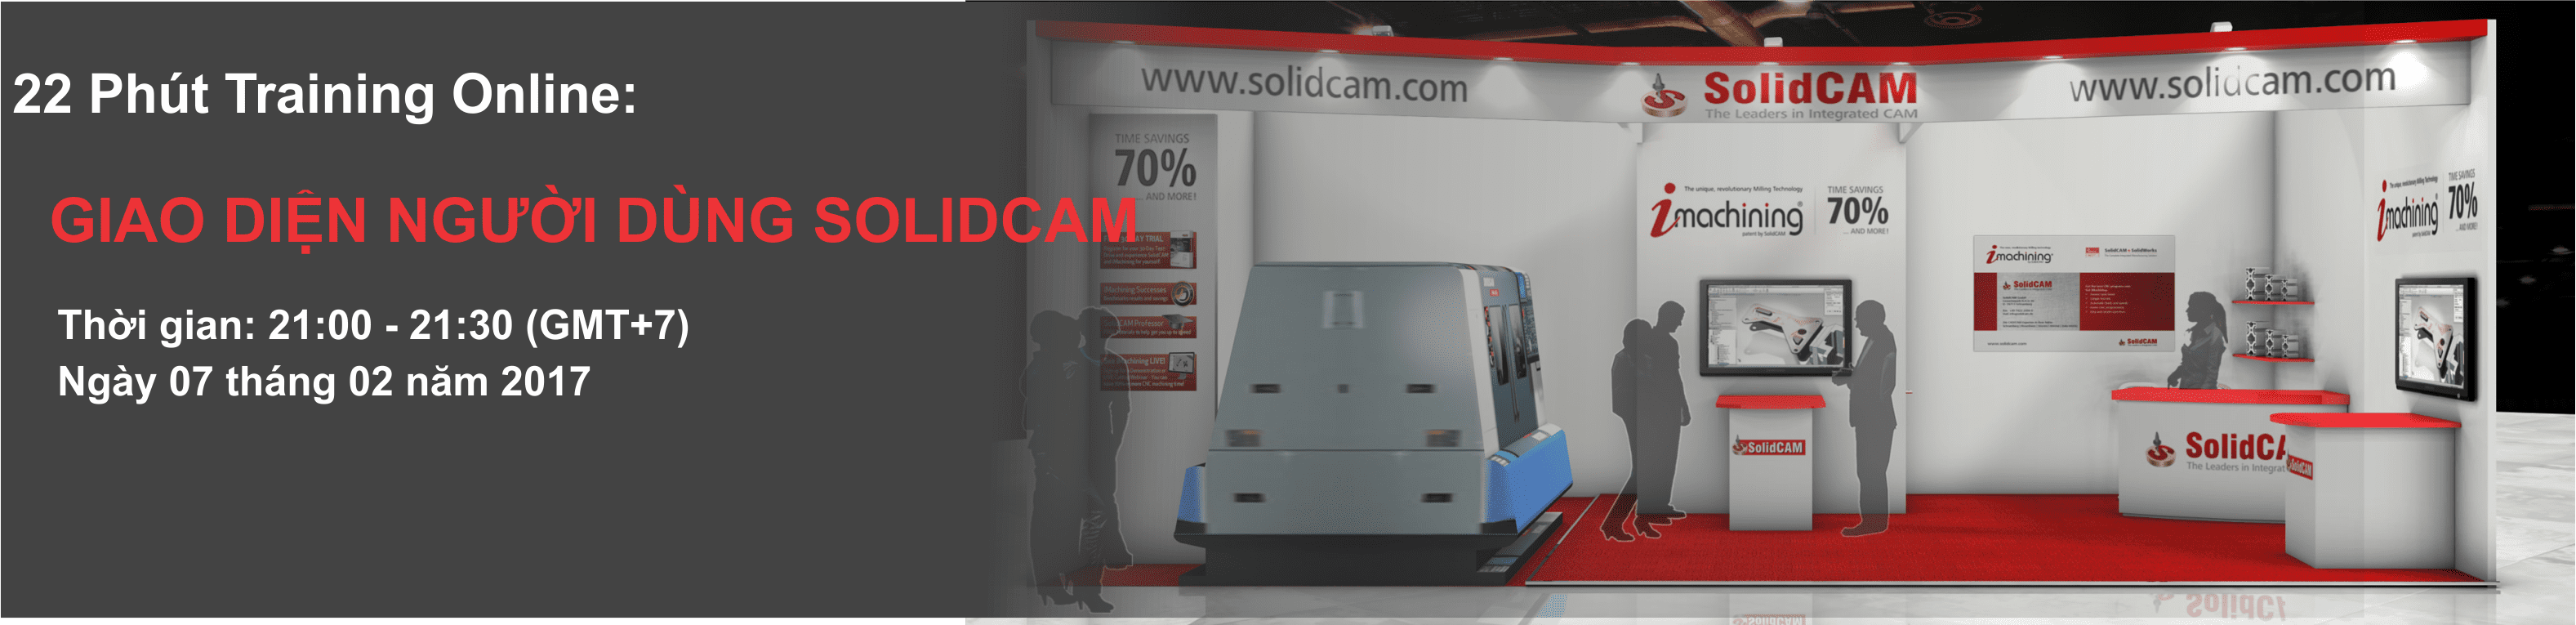 Khóa đào tạo SOLIDCAM cơ bản miễn phí dành cho người mới bắt đầu